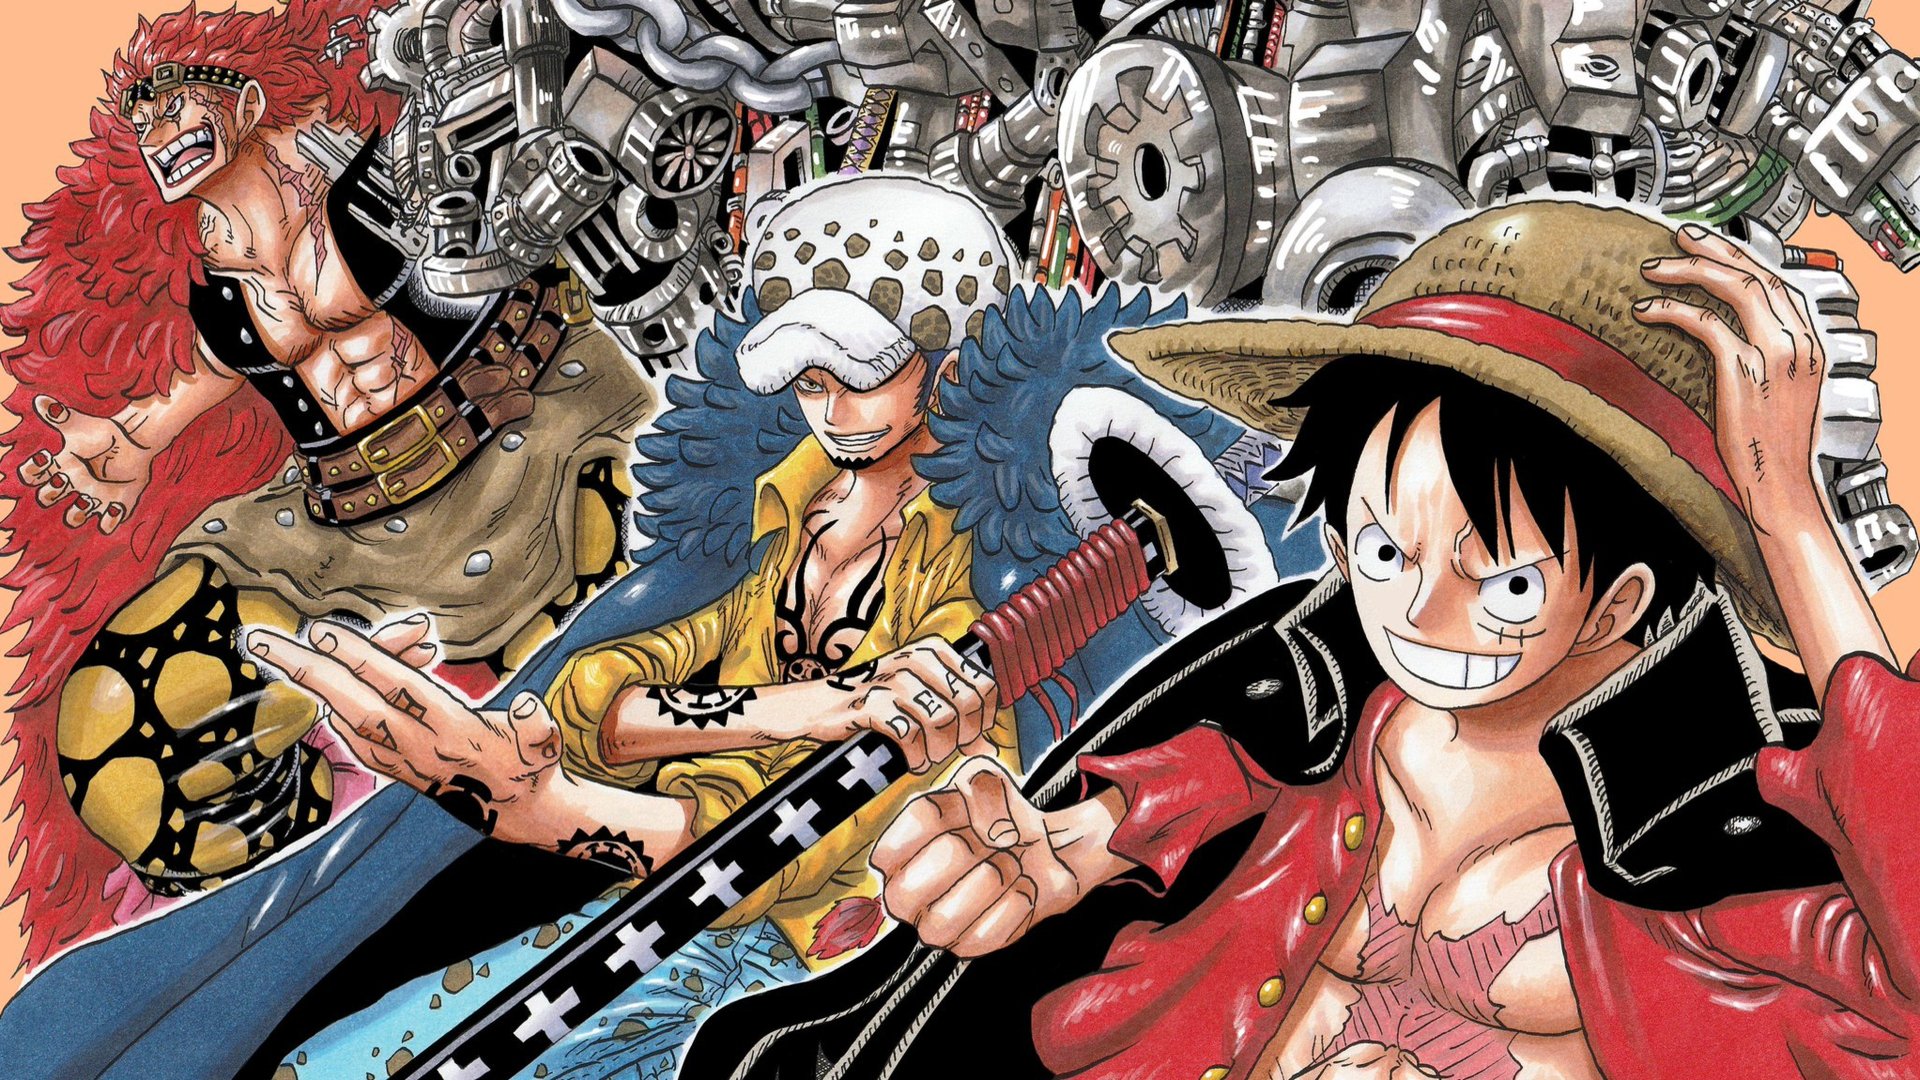 Cùng chiêm ngưỡng bức ảnh đẹp lung linh về hai nhân vật Luffy và Law trong One Piece nào! Cả hai đều có vẻ ngoài độc đáo và khác biệt, đem lại cho người xem những trải nghiệm mới lạ. Nếu bạn là fan của bộ truyện này, hãy đừng bỏ qua bức ảnh này nhé!